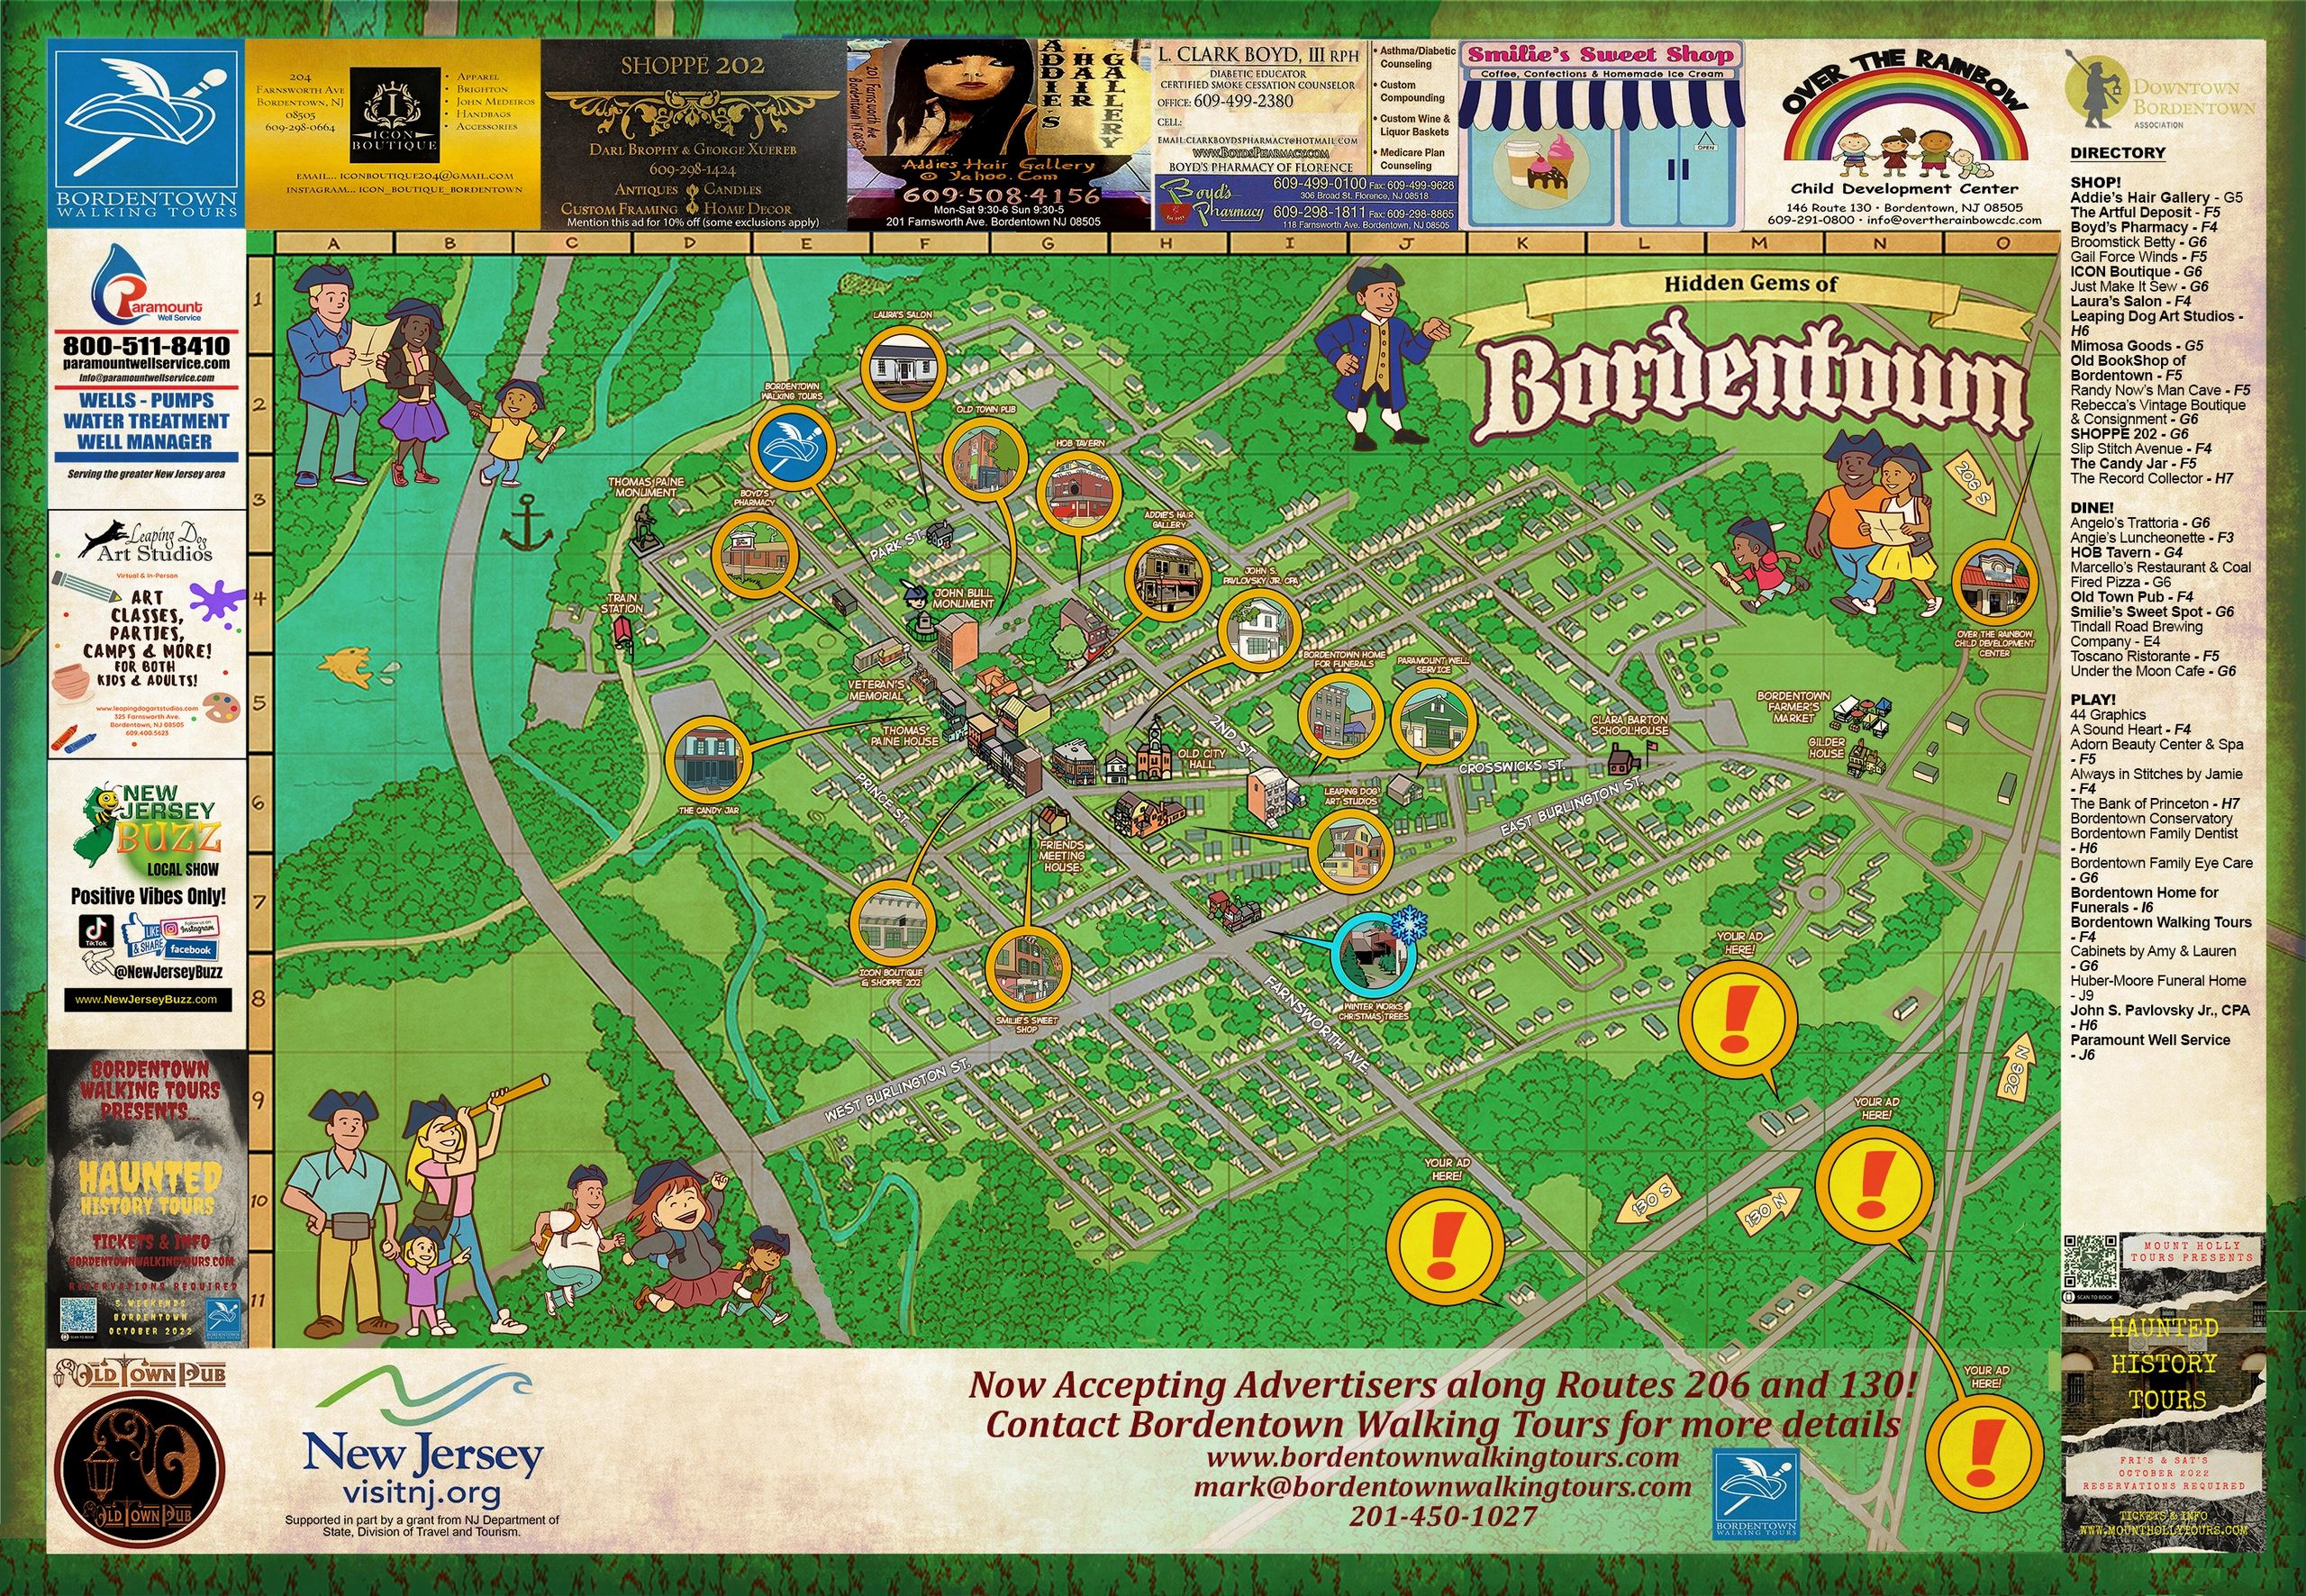 Bordentown Walking Tours Walking Tour Guide, Historical Sightseeing